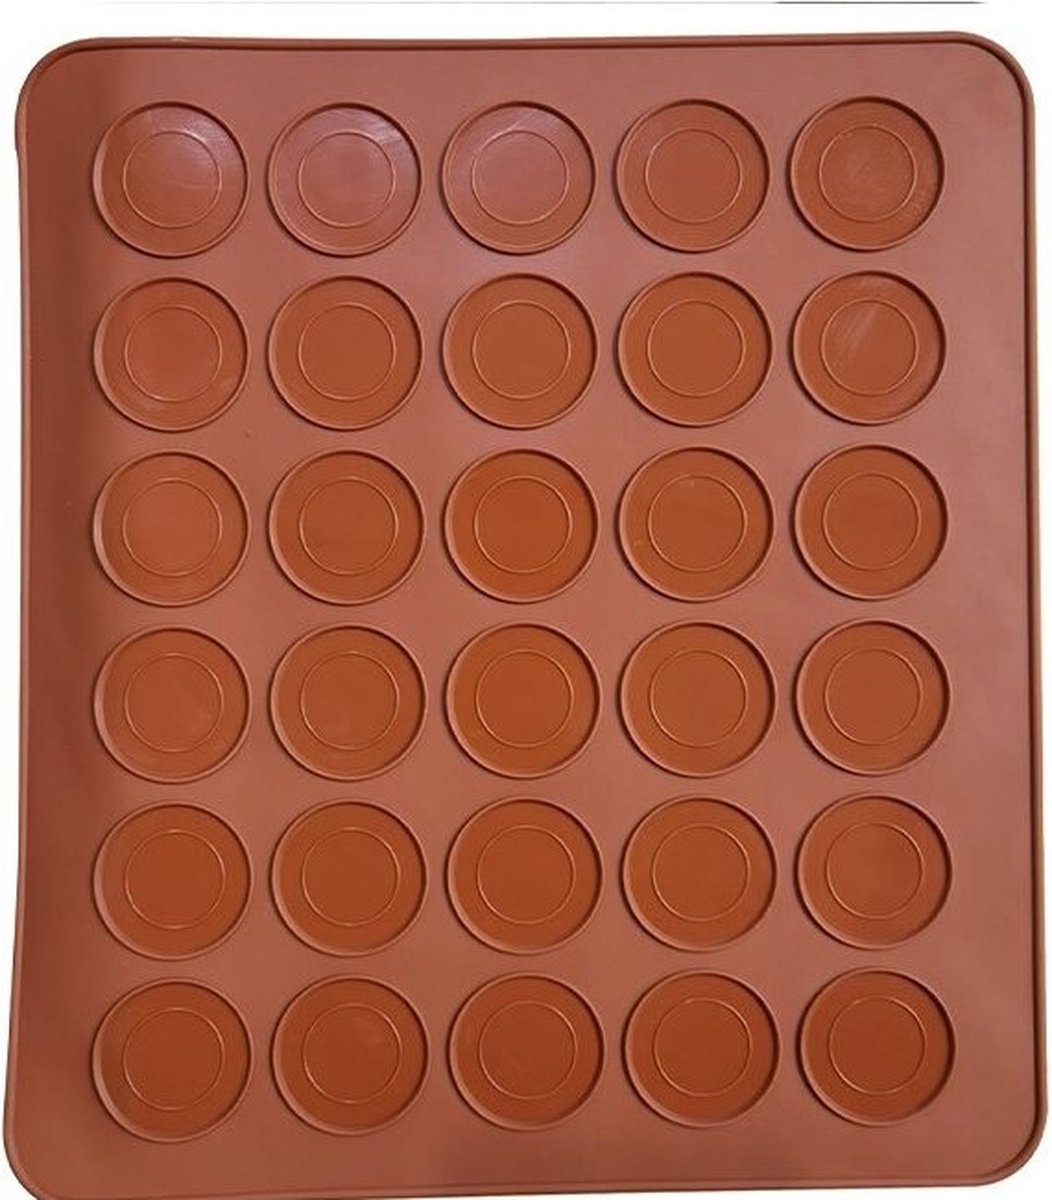 Macarons bakmat - Macarons set - Macarons mat - 30 x 22 cm - Macarons bakken